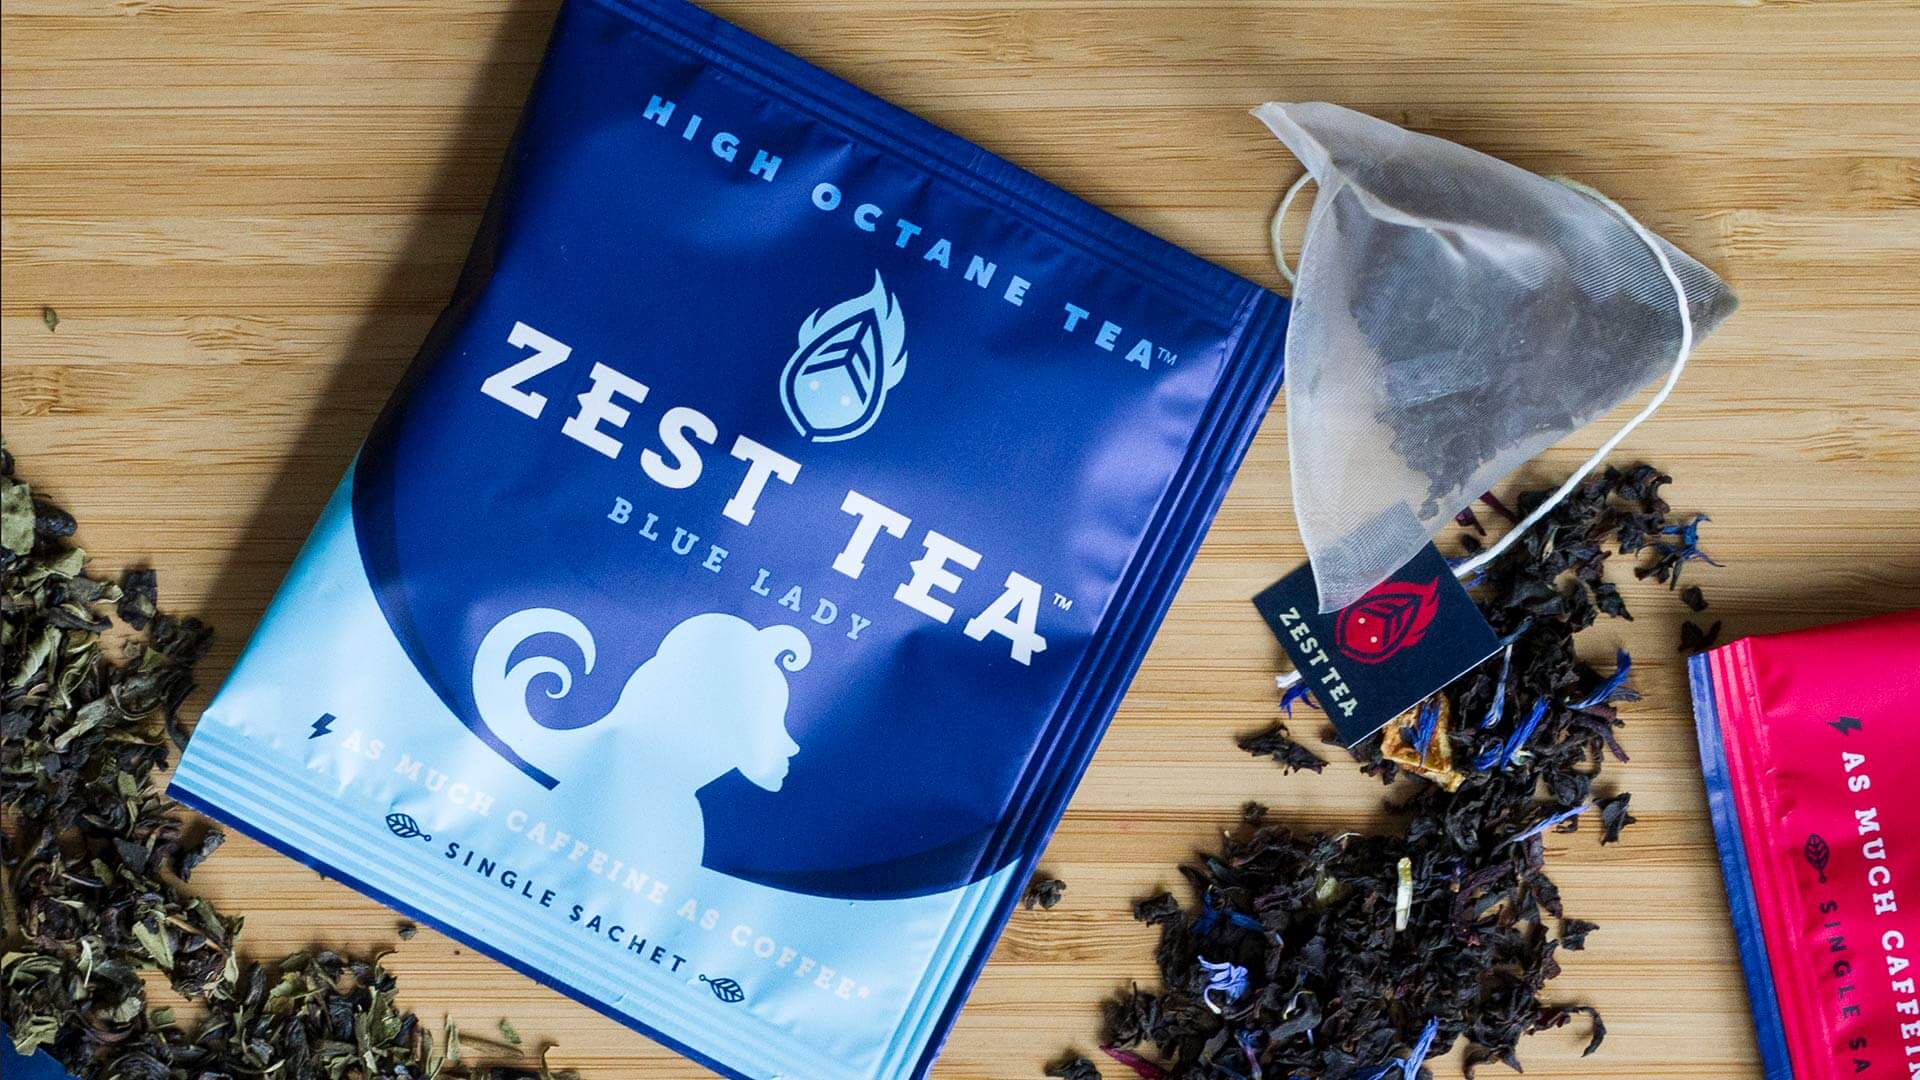 Zest Tea